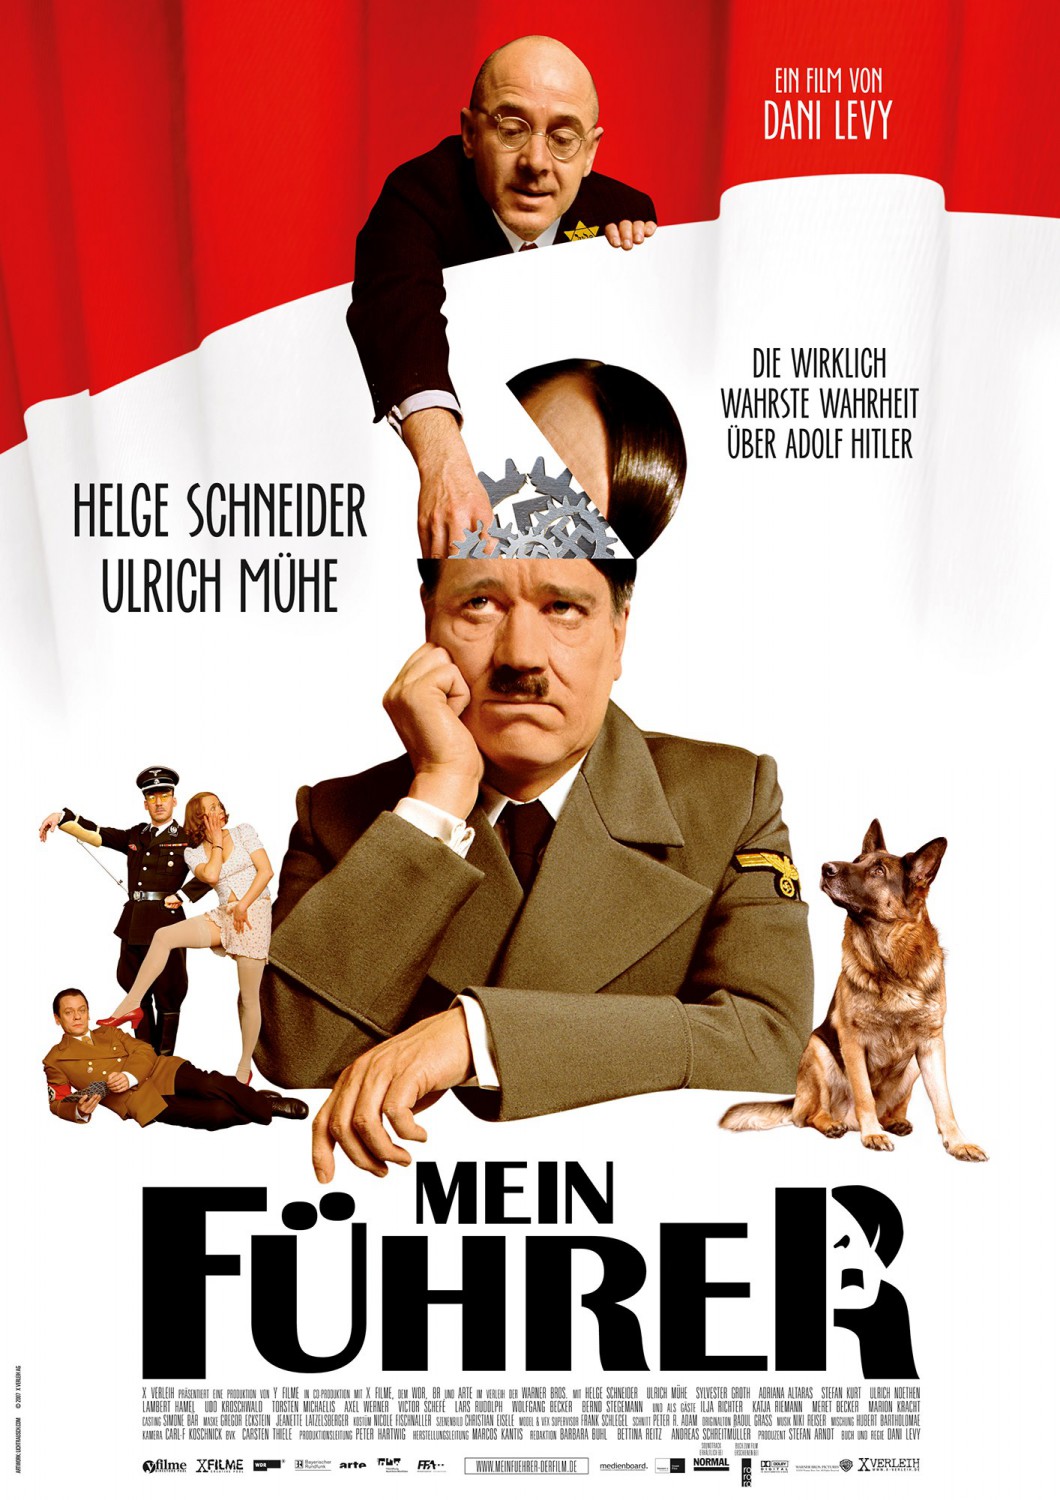 Extra Large Movie Poster Image for Mein Führer - Die wirklich wahrste Wahrheit über Adolf Hitler 